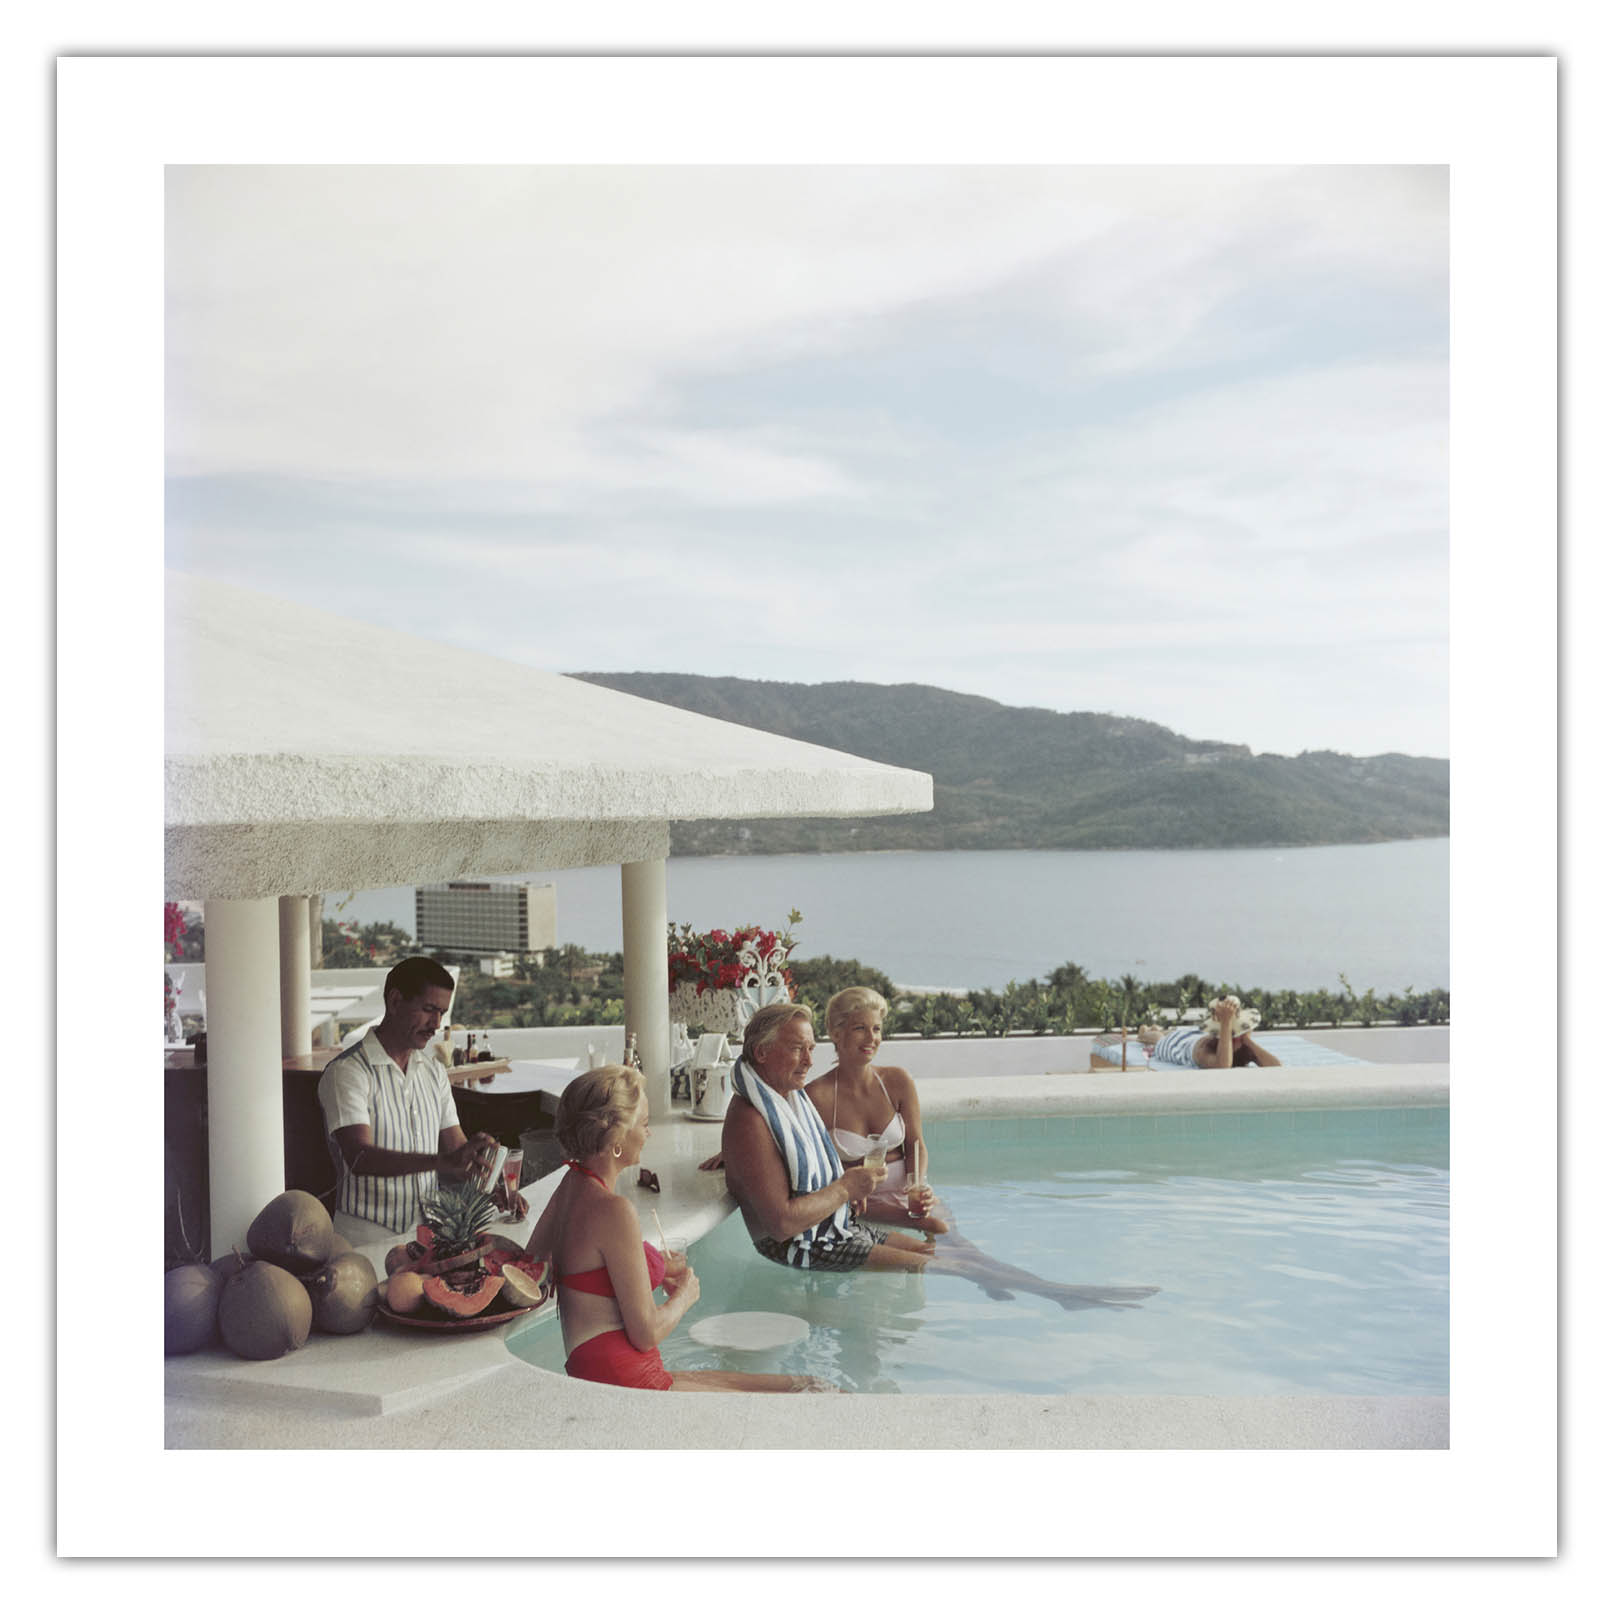 Acapulco Club by Slim Aarons